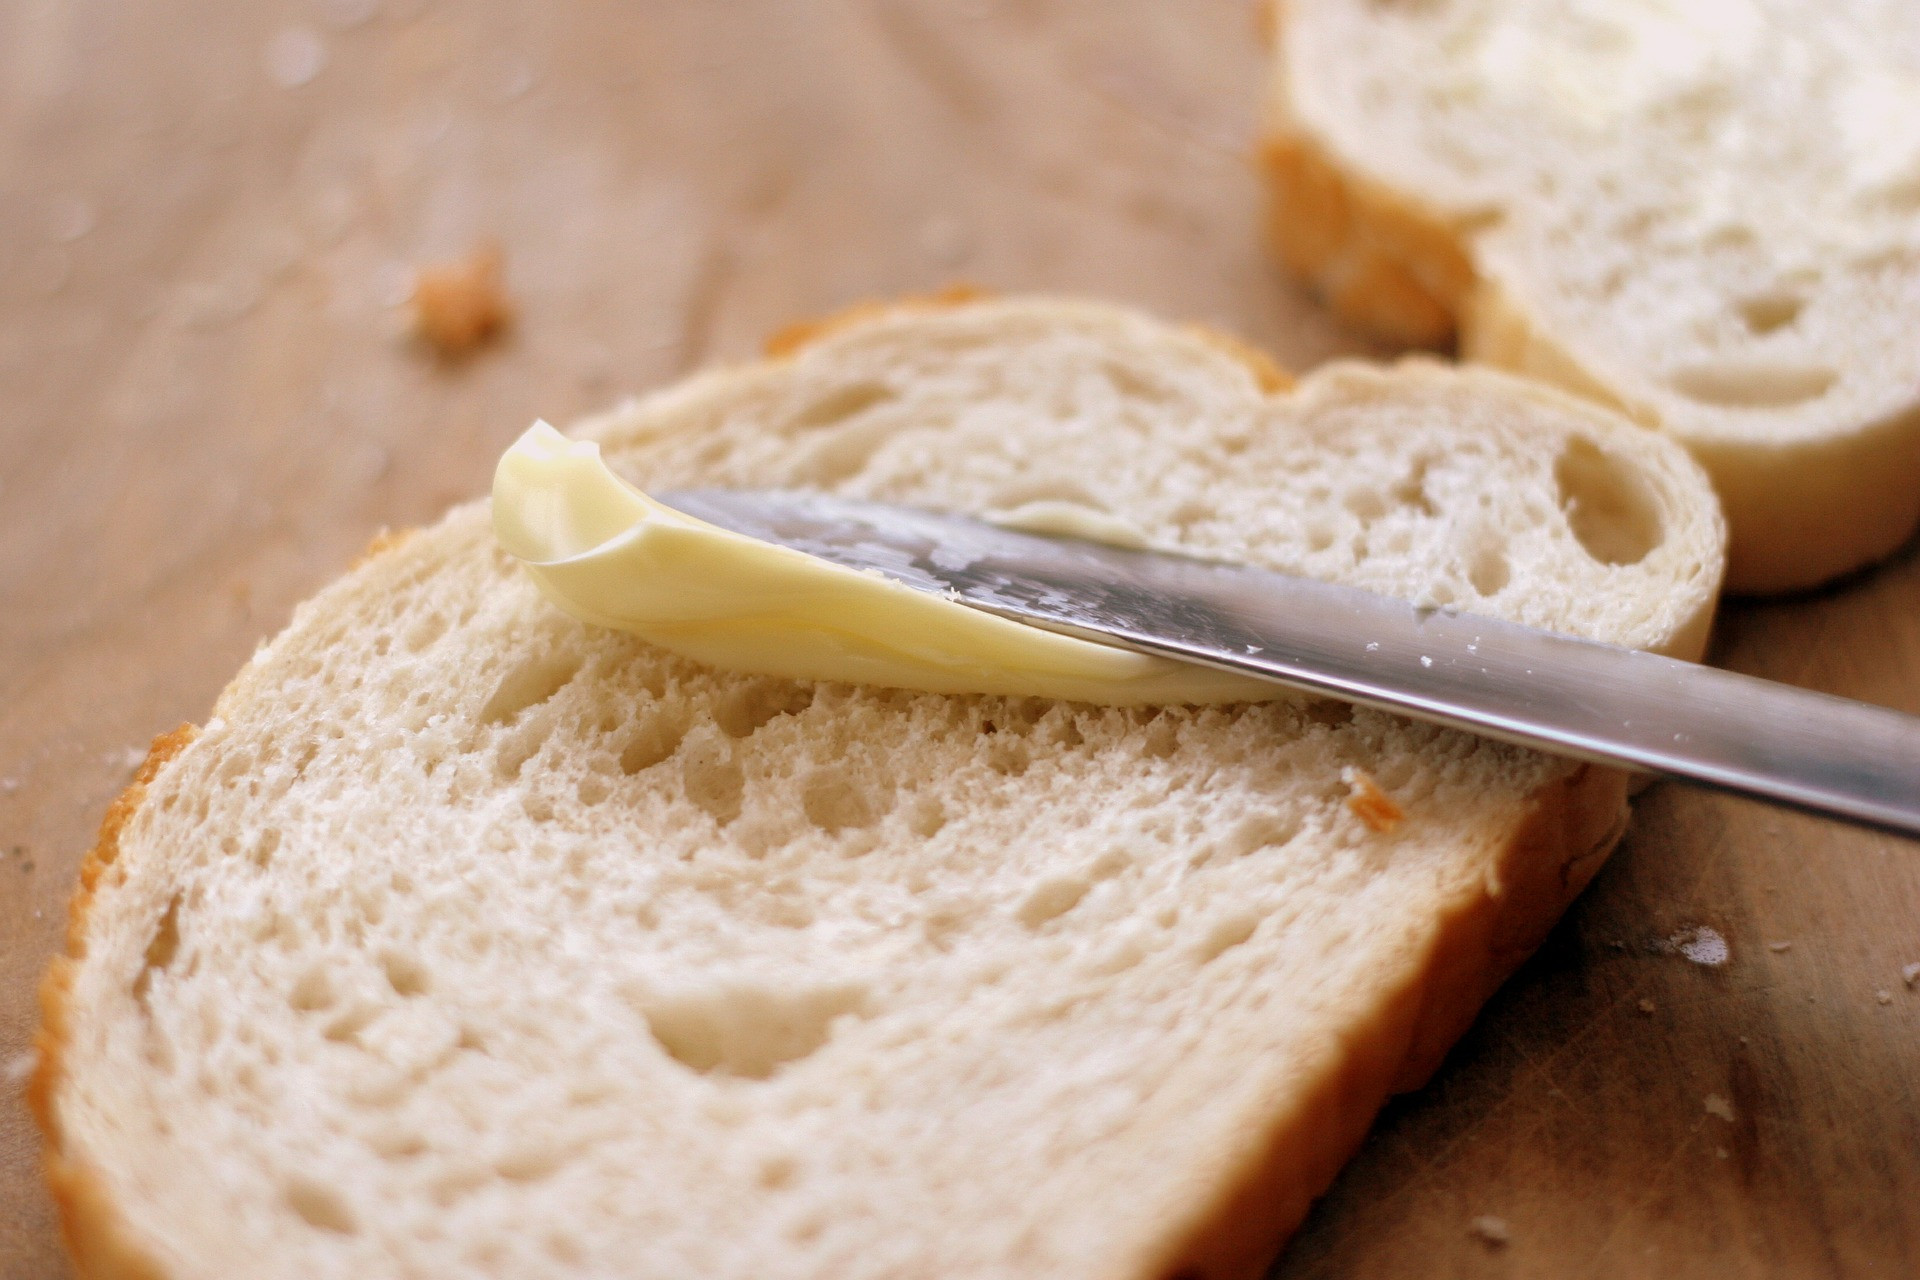 Maslo a margarín majú približne rovnaké množstvo kalórií. Margarín vyrobený z rastlinných olejov je zdravšia alternatíva k maslu. Ale niektoré margaríny sú vlastne menej zdravé pre obsah tukov, ktoré nepriaznivo vplývajú na cholesterol a zdravie srdca.